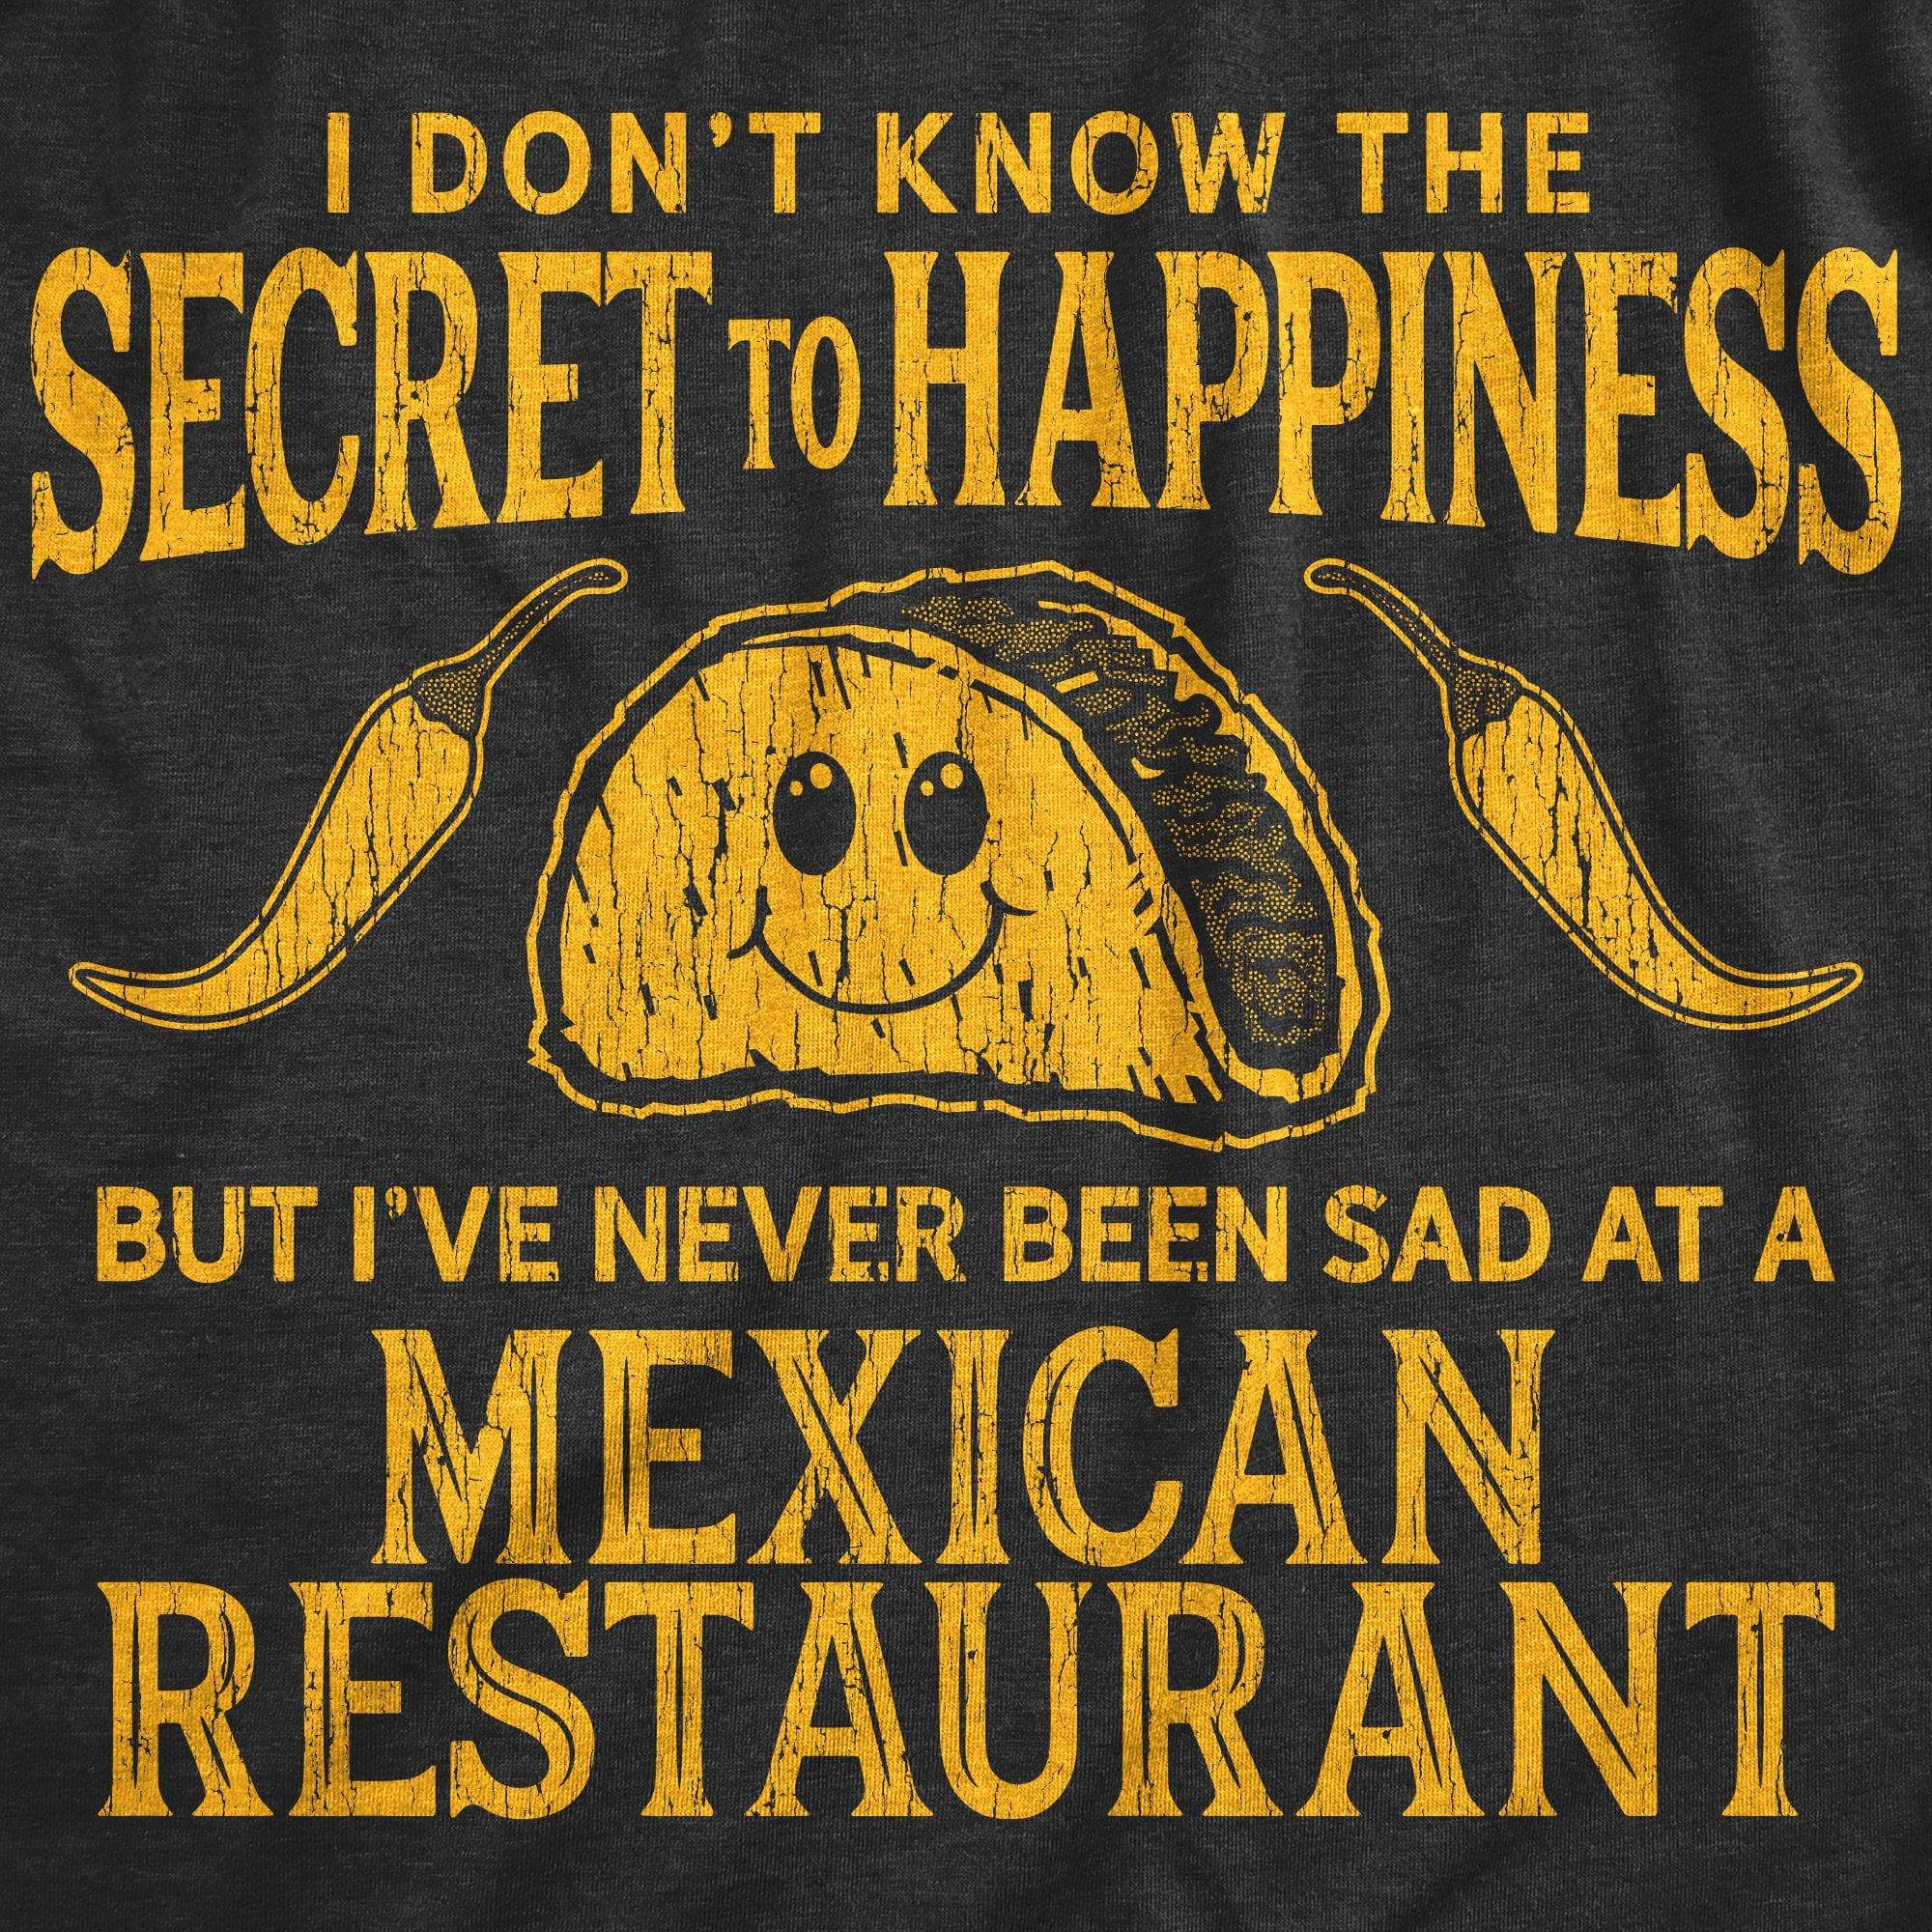 Sad At A Mexican Restaurant Men's Tshirt - Crazy Dog T-Shirts